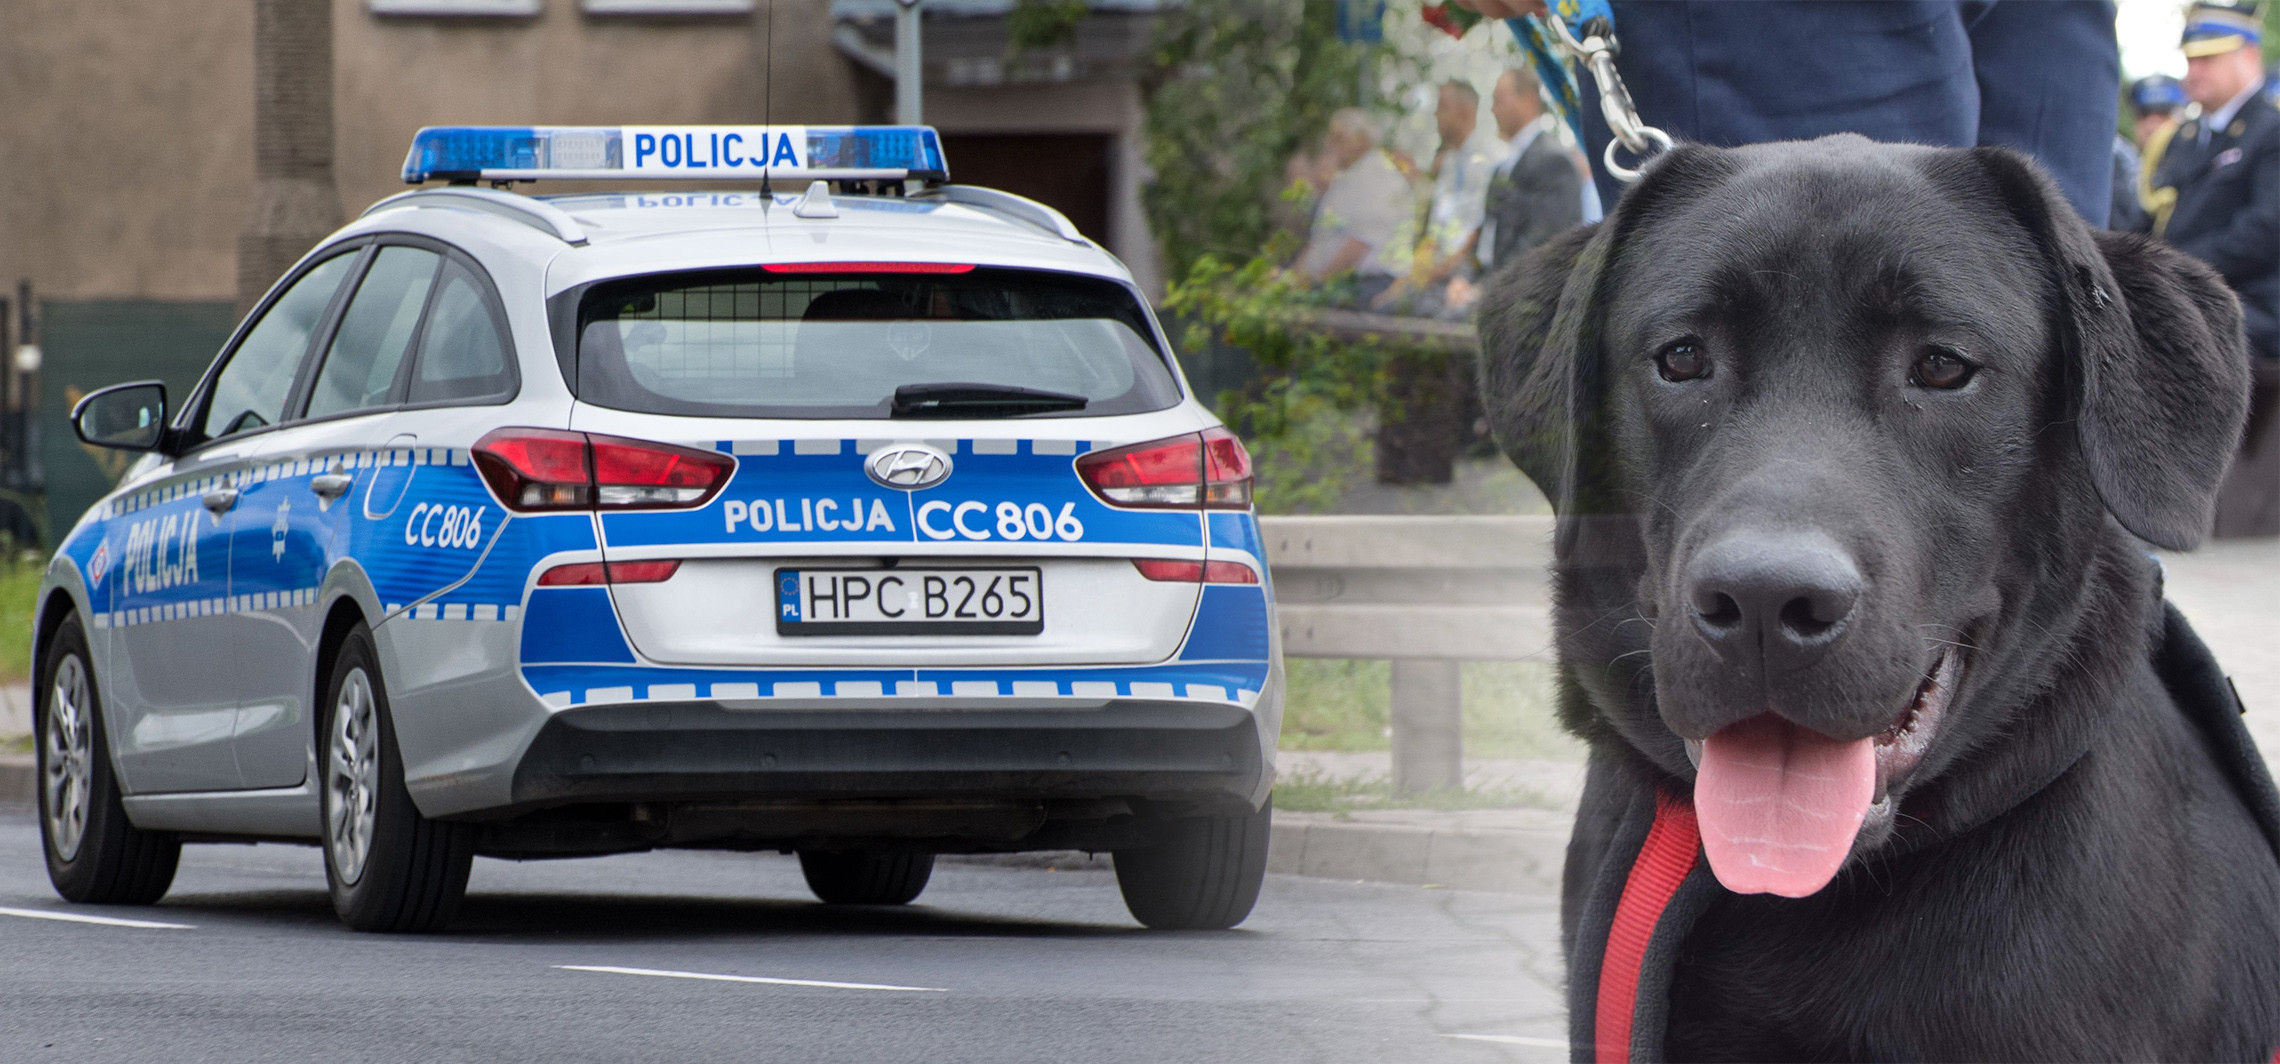 Inowrocław - Nissan potrącił labradora. Policja szuka świadków